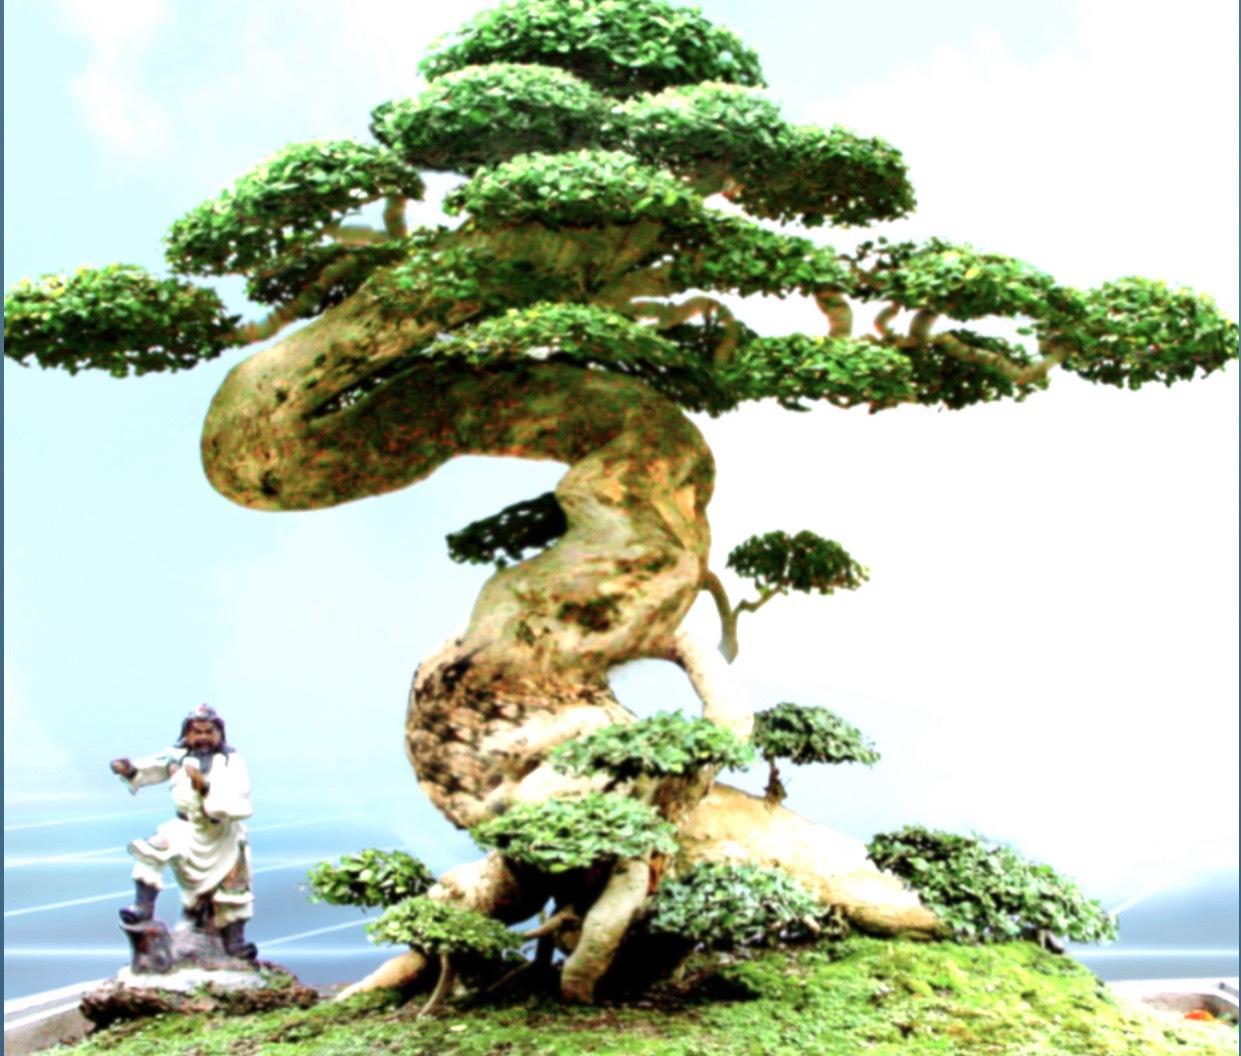 Phú Thọ: Ngắm đã mắt dàn cây cảnh cổ thụ độc lạ ở vườn cây di sản có một không hai ở Việt Nam - Ảnh 4.